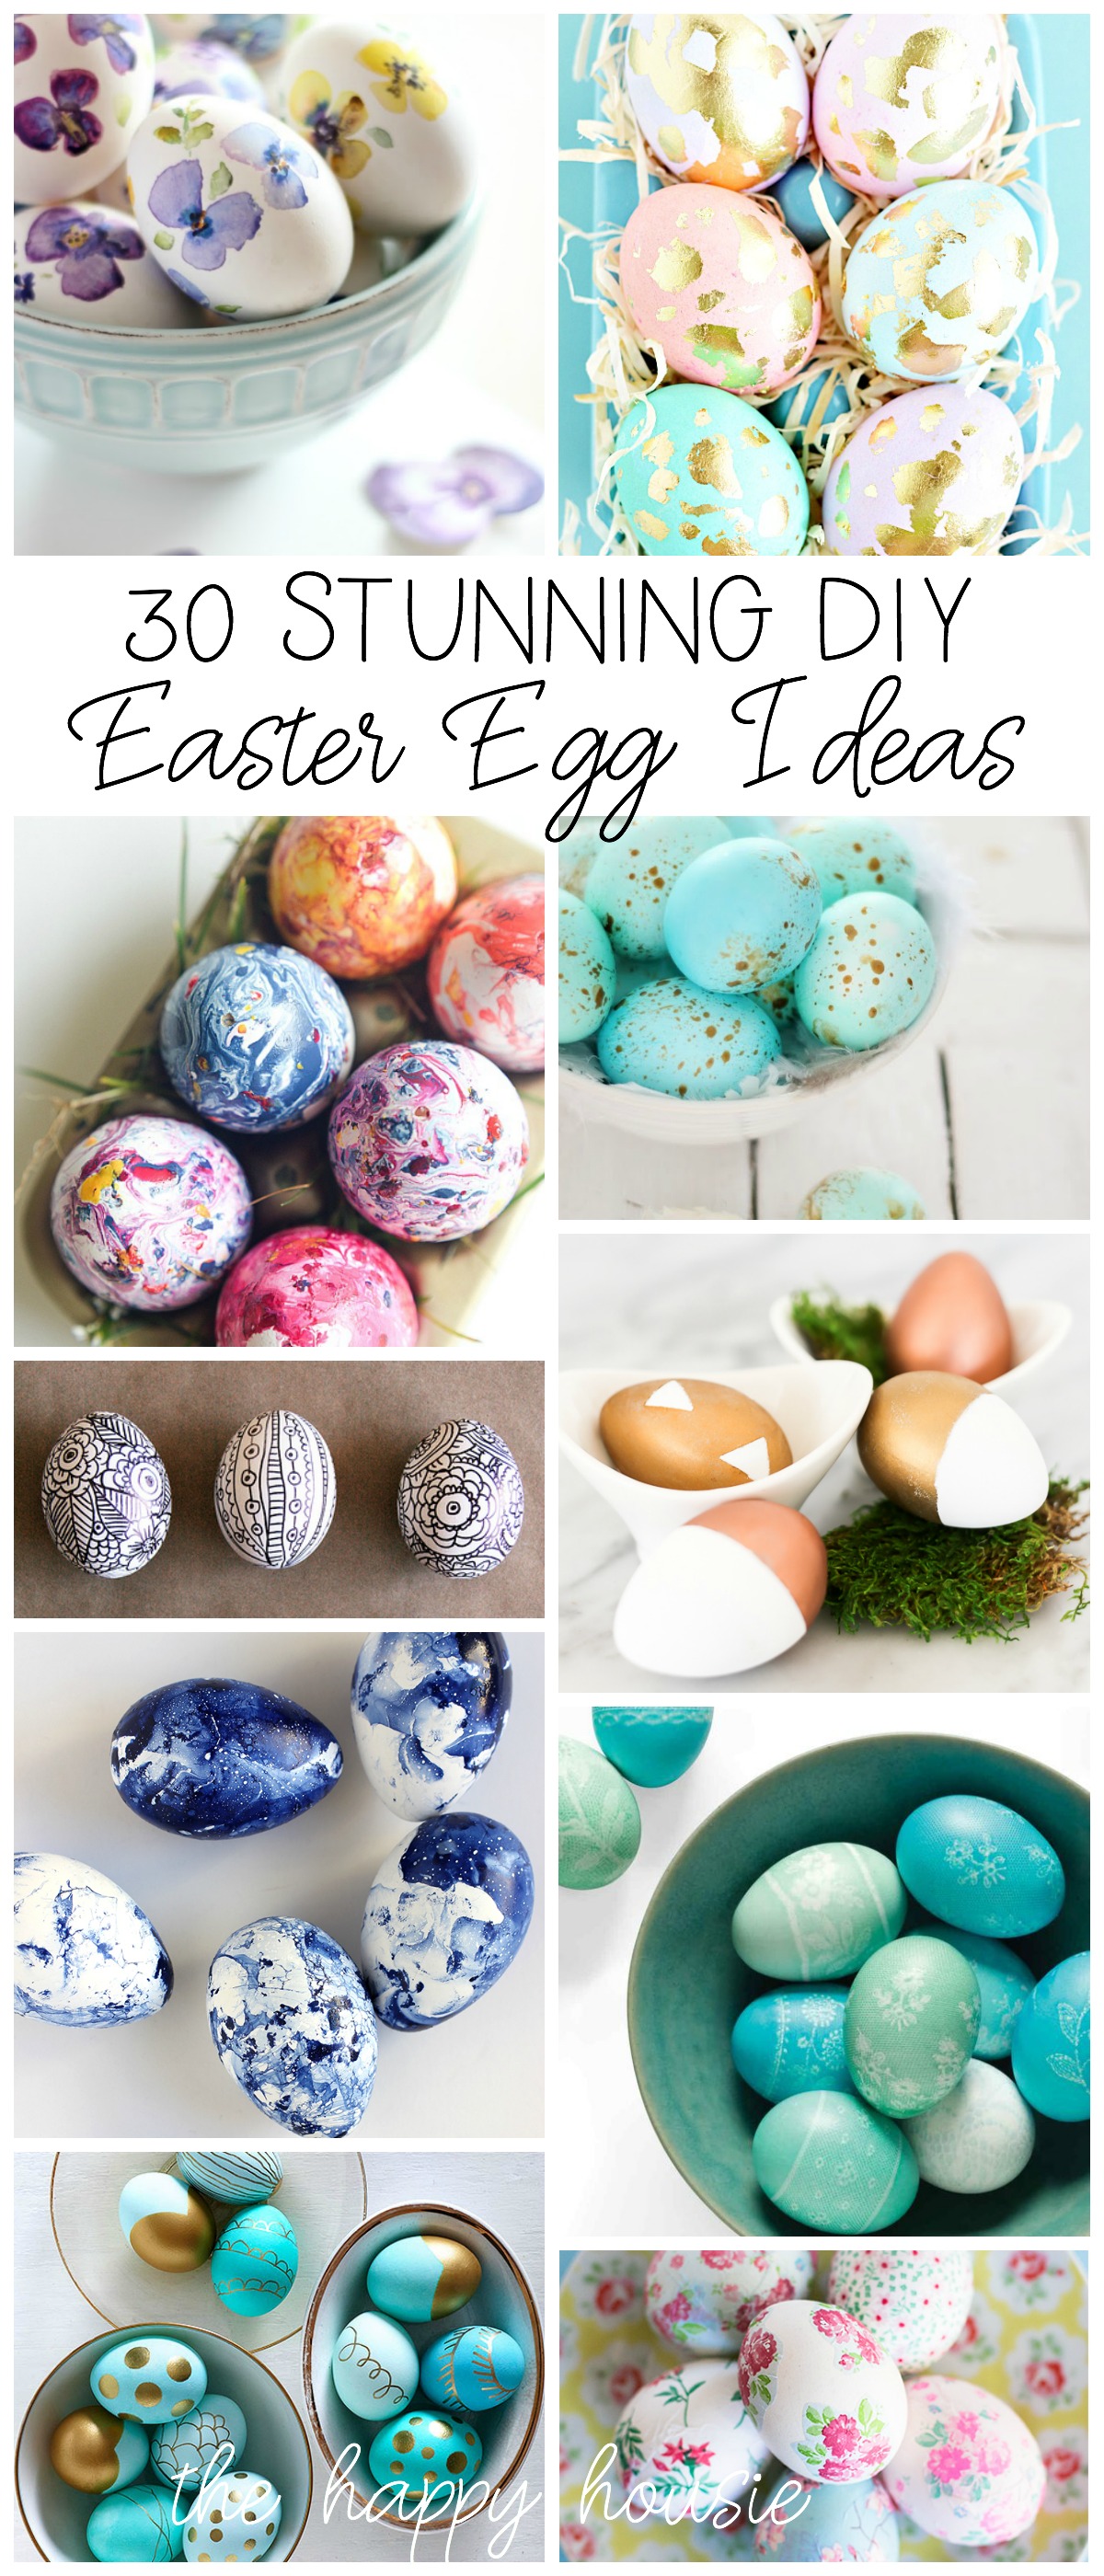 30 Stunning DIY Easter Egg Ideas poster.